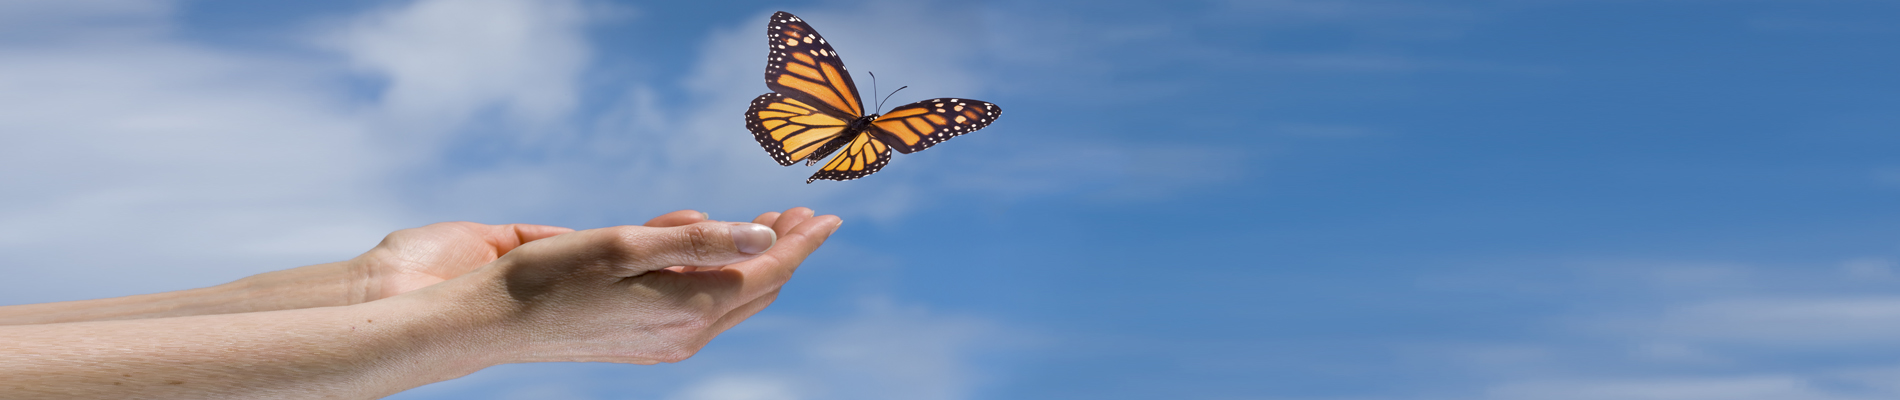 Open hands releasing a Monarch butterfly